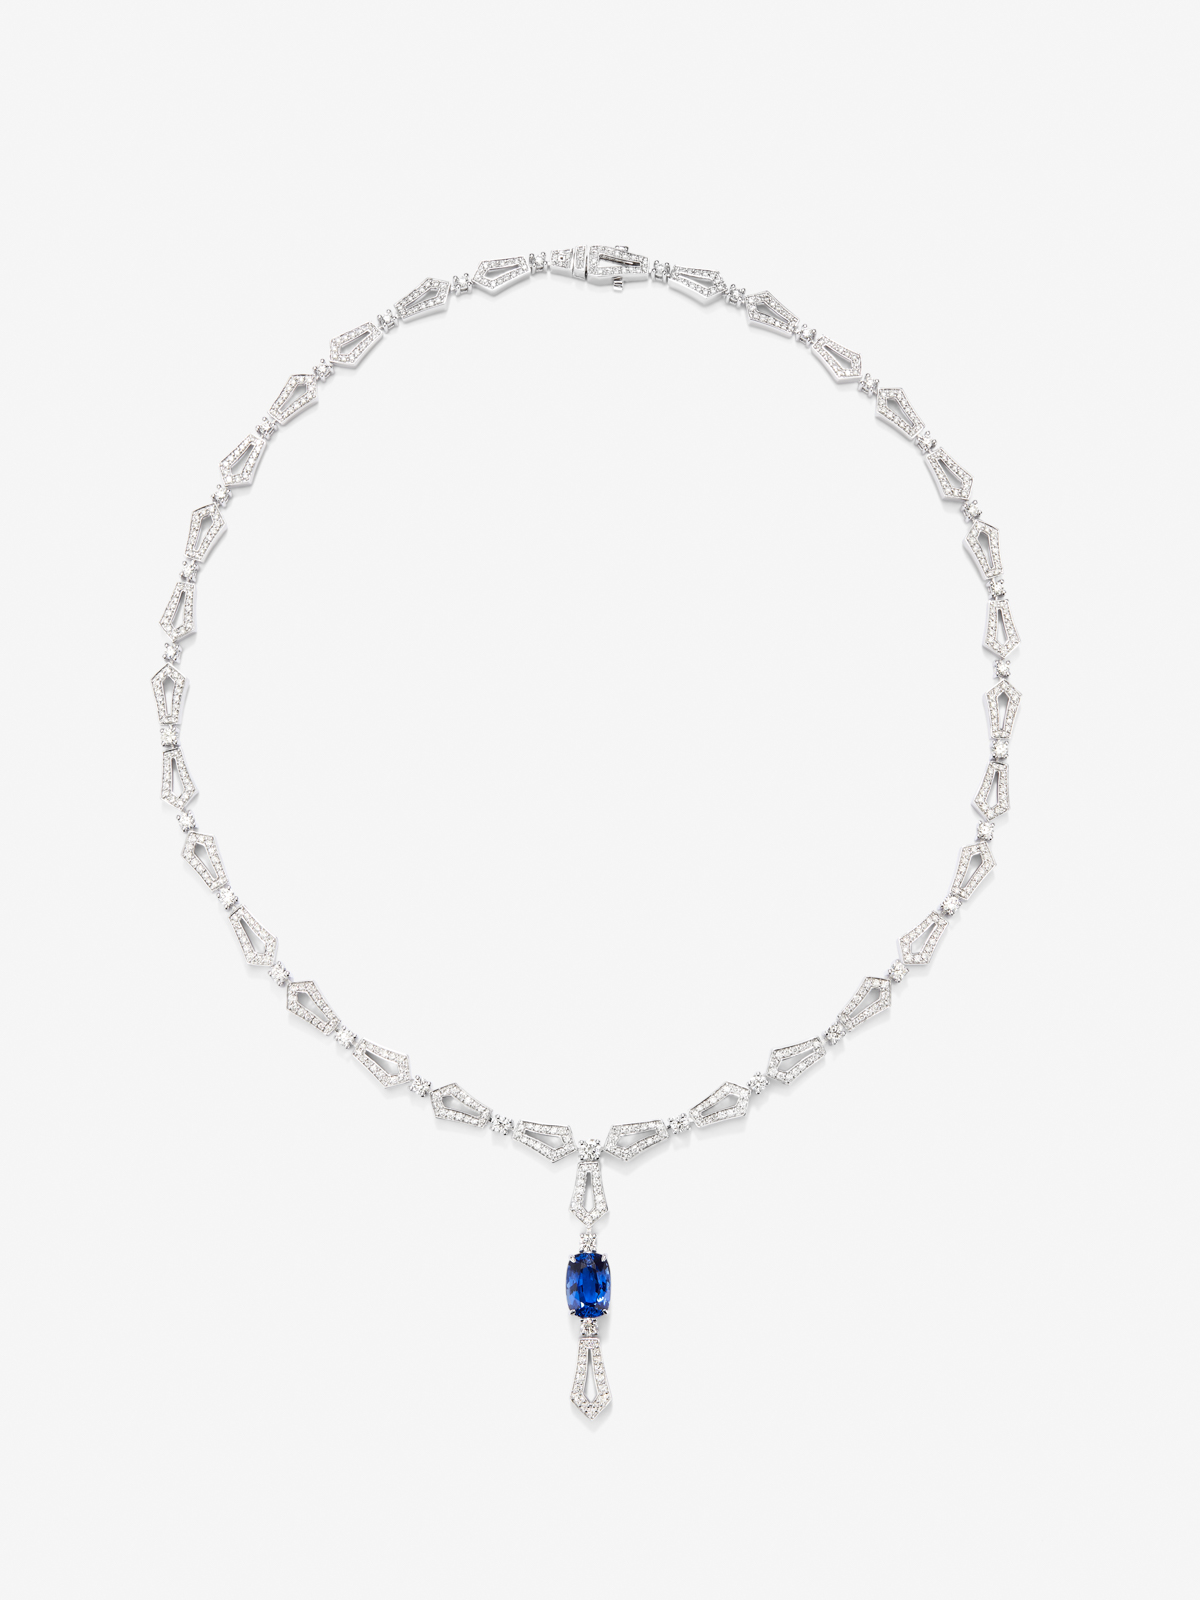 Collar de oro blanco de 18K con zafiro azul en talla cushion de 3,17 cts y diamantes blancos en talla brillante de 4,13 cts